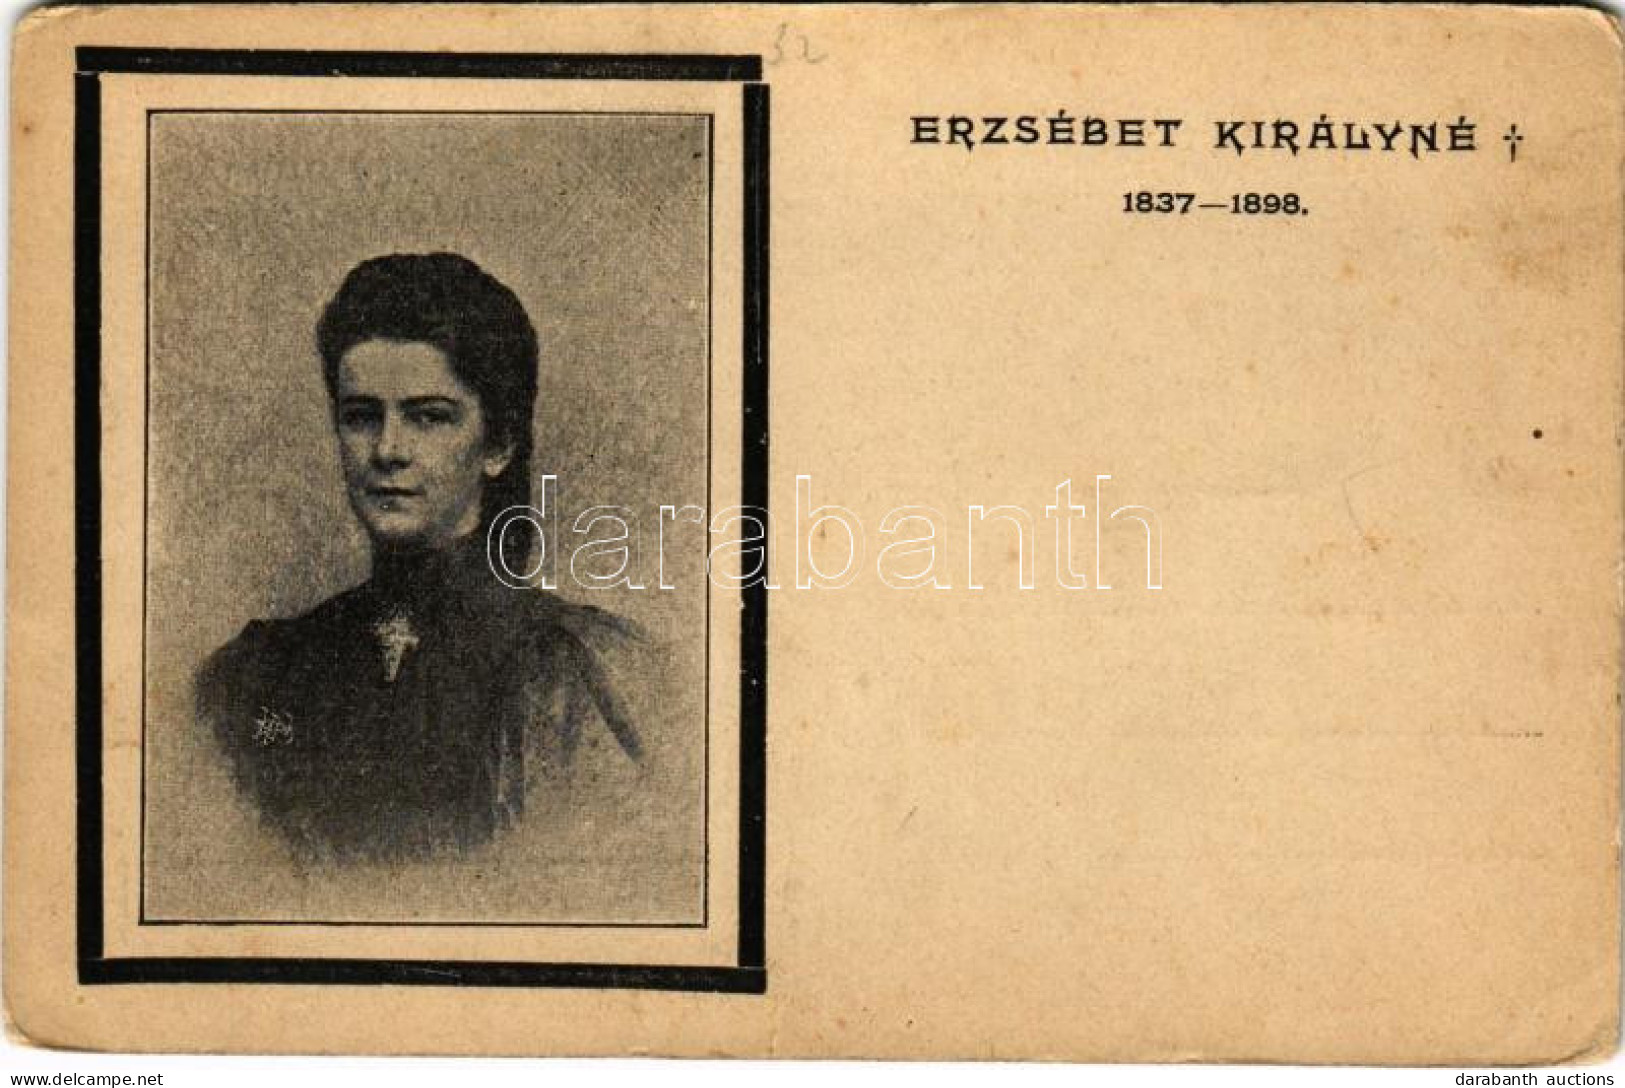 ** T2/T3 Ő Felsége Erzsébet Királyné (Sissi) Gyászlapja / Obituary Postcard Of Empress Elisabeth Of Austria (Sisi) (EK) - Zonder Classificatie